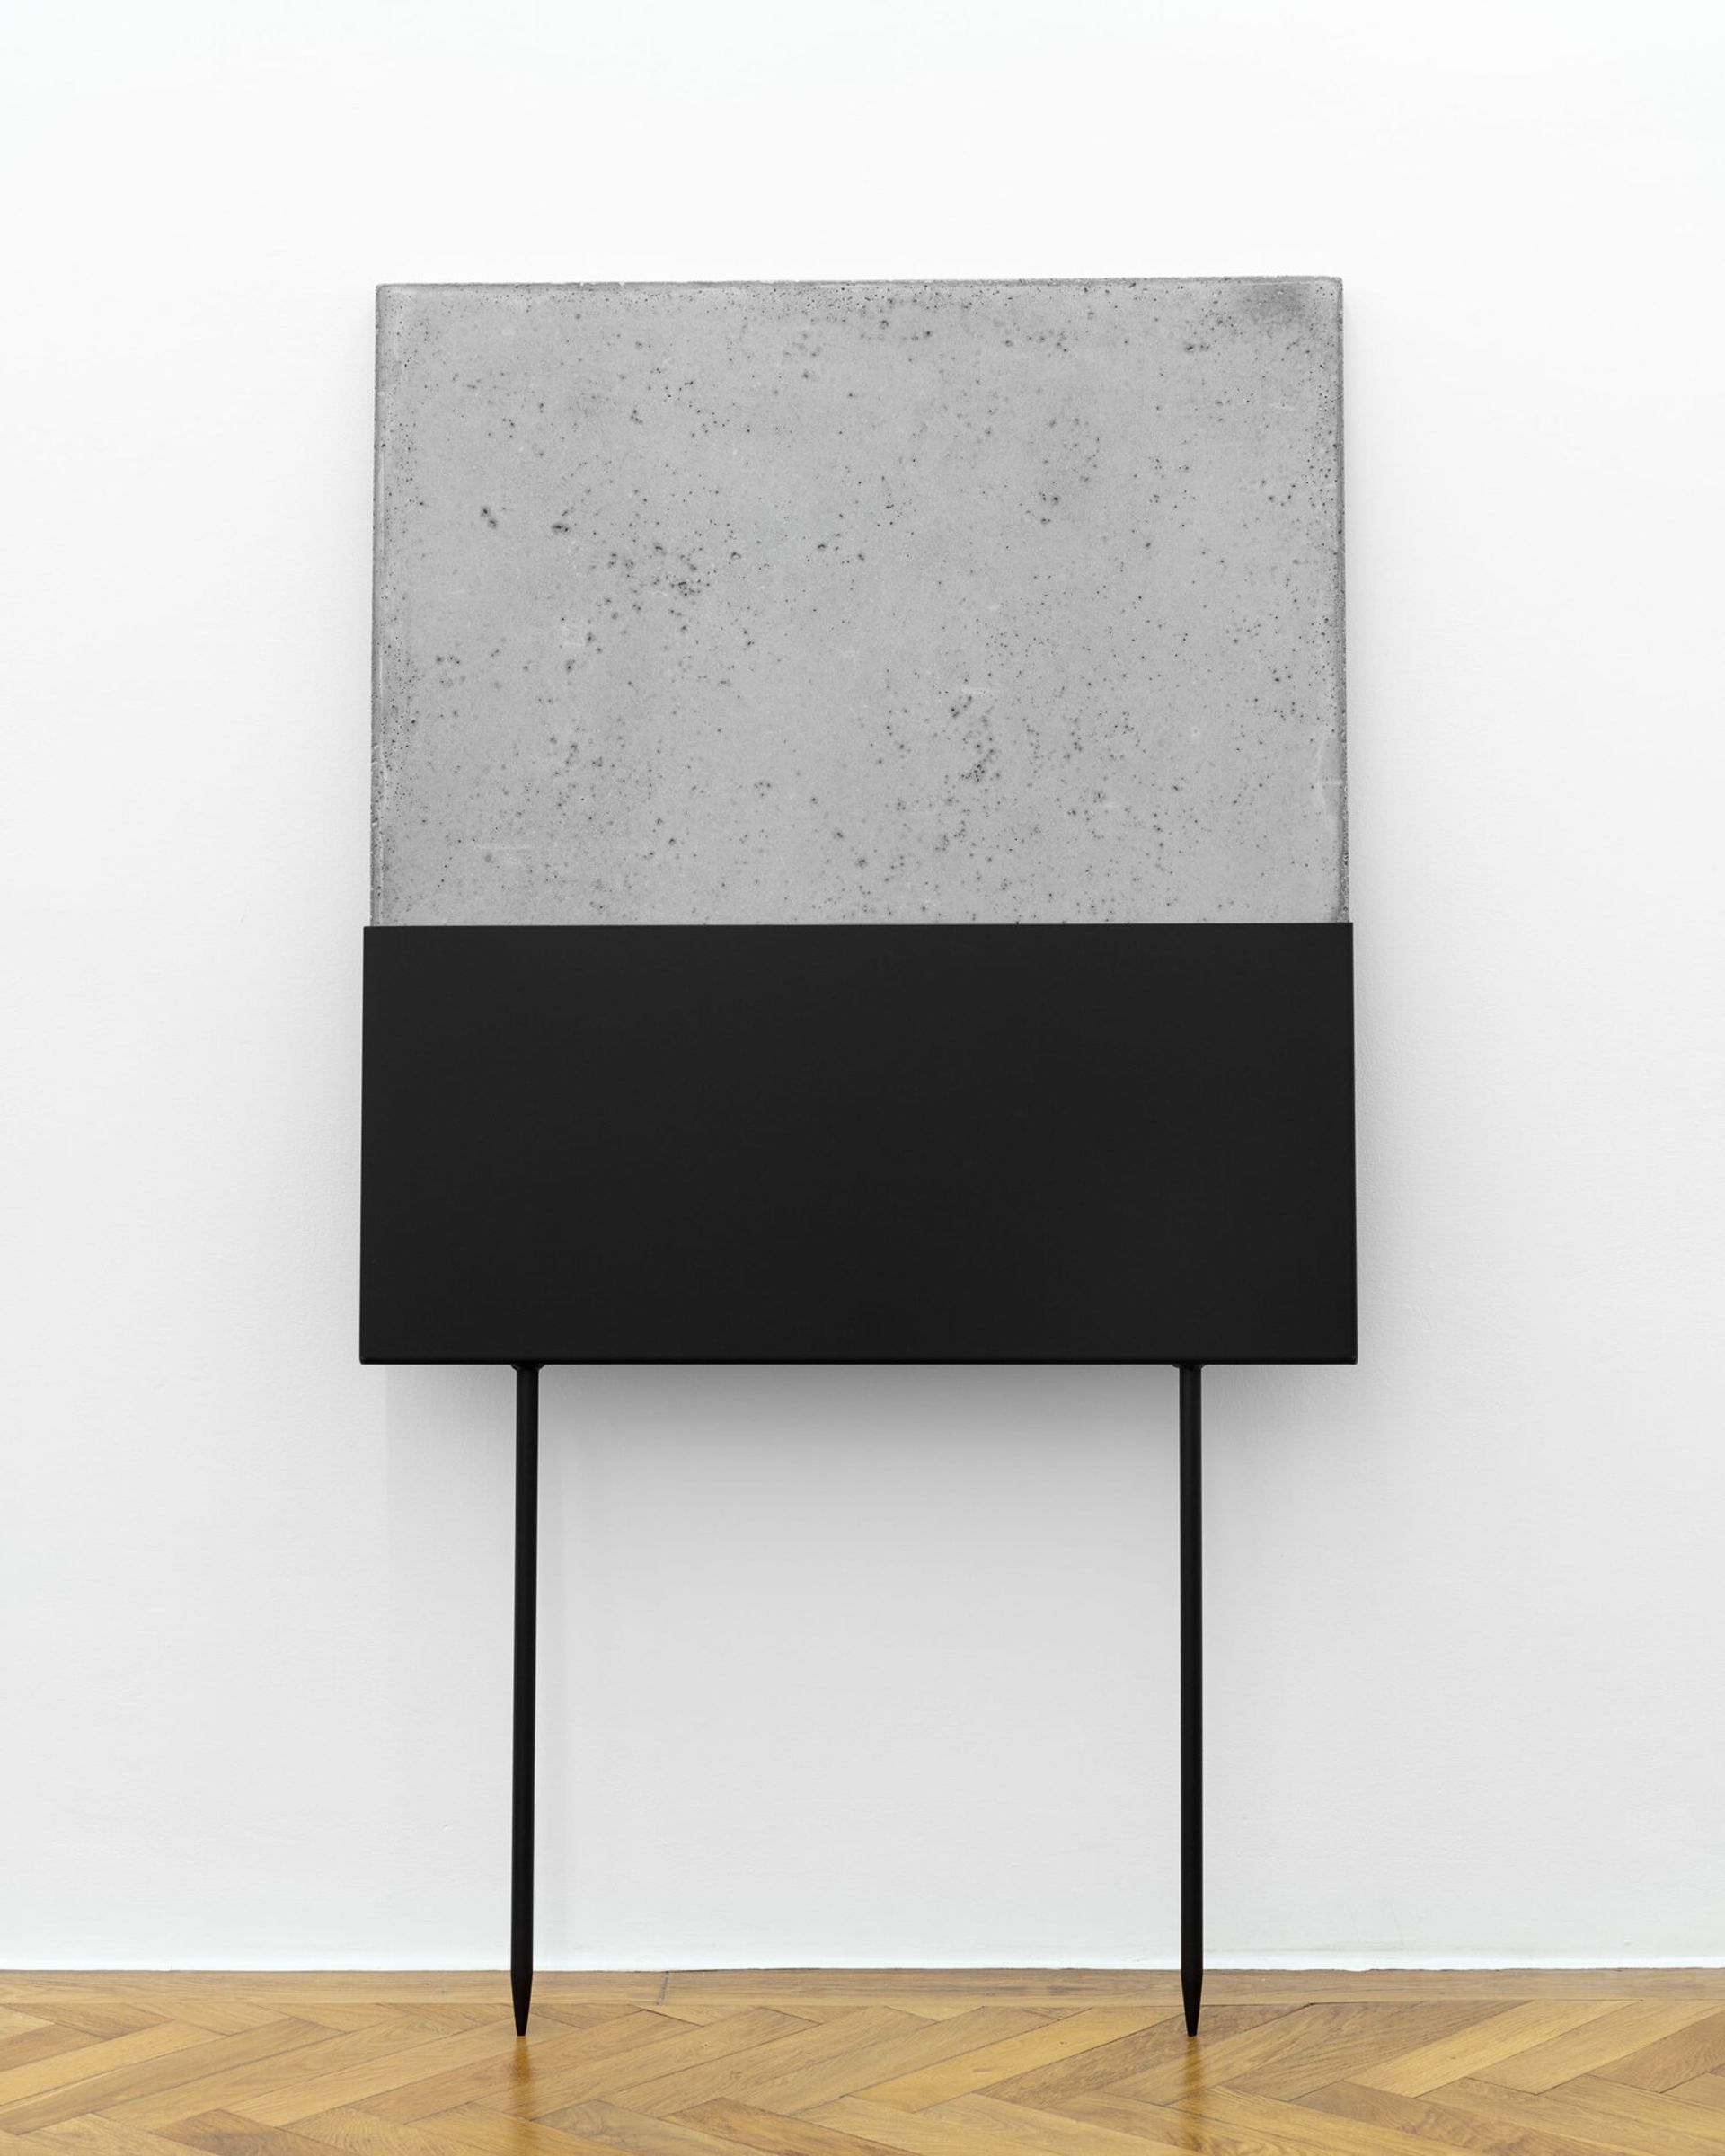 Malte Zenses, Fragment einer Architektur #2, 2020, steel and concrete, 160 × 90 cm